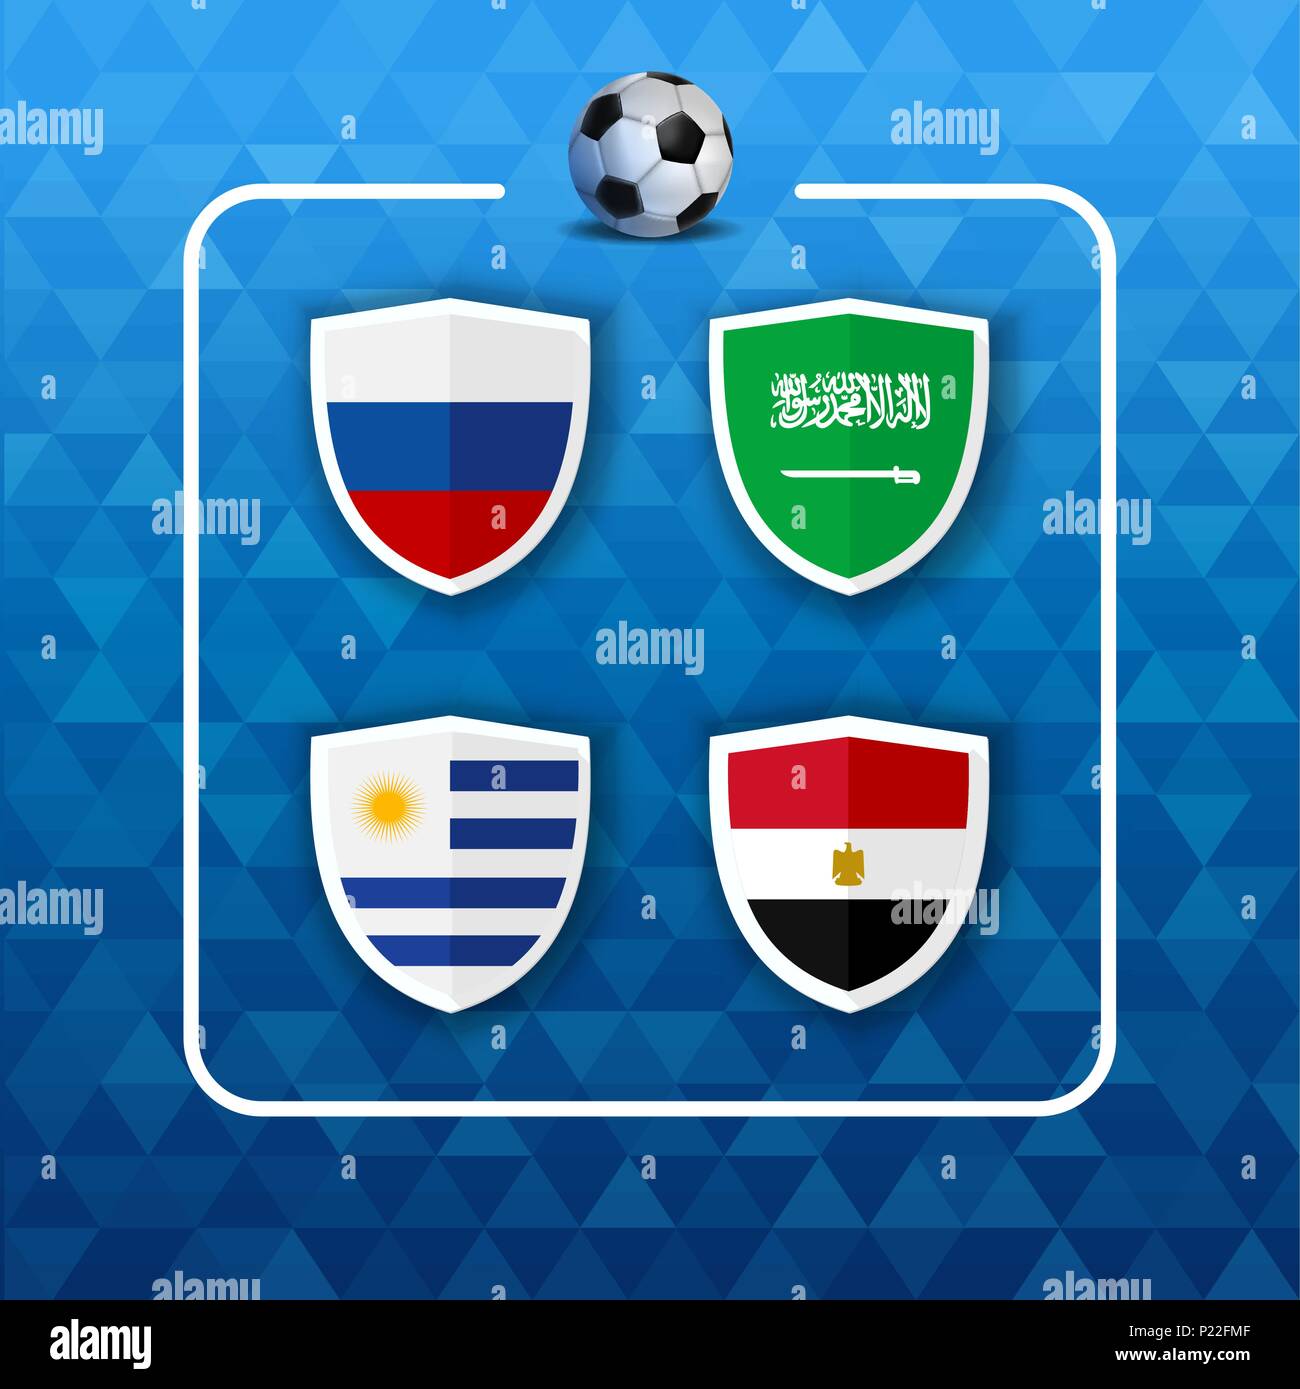 Championnat de soccer horaire de l'événement. Un groupe de l'équipe de pays  Liste des jeux match de football. Comprend la Russie, l'Arabie saoudite,  l'Égypte et de l'Uruguay. Vecteur EPS10 Image Vectorielle Stock -